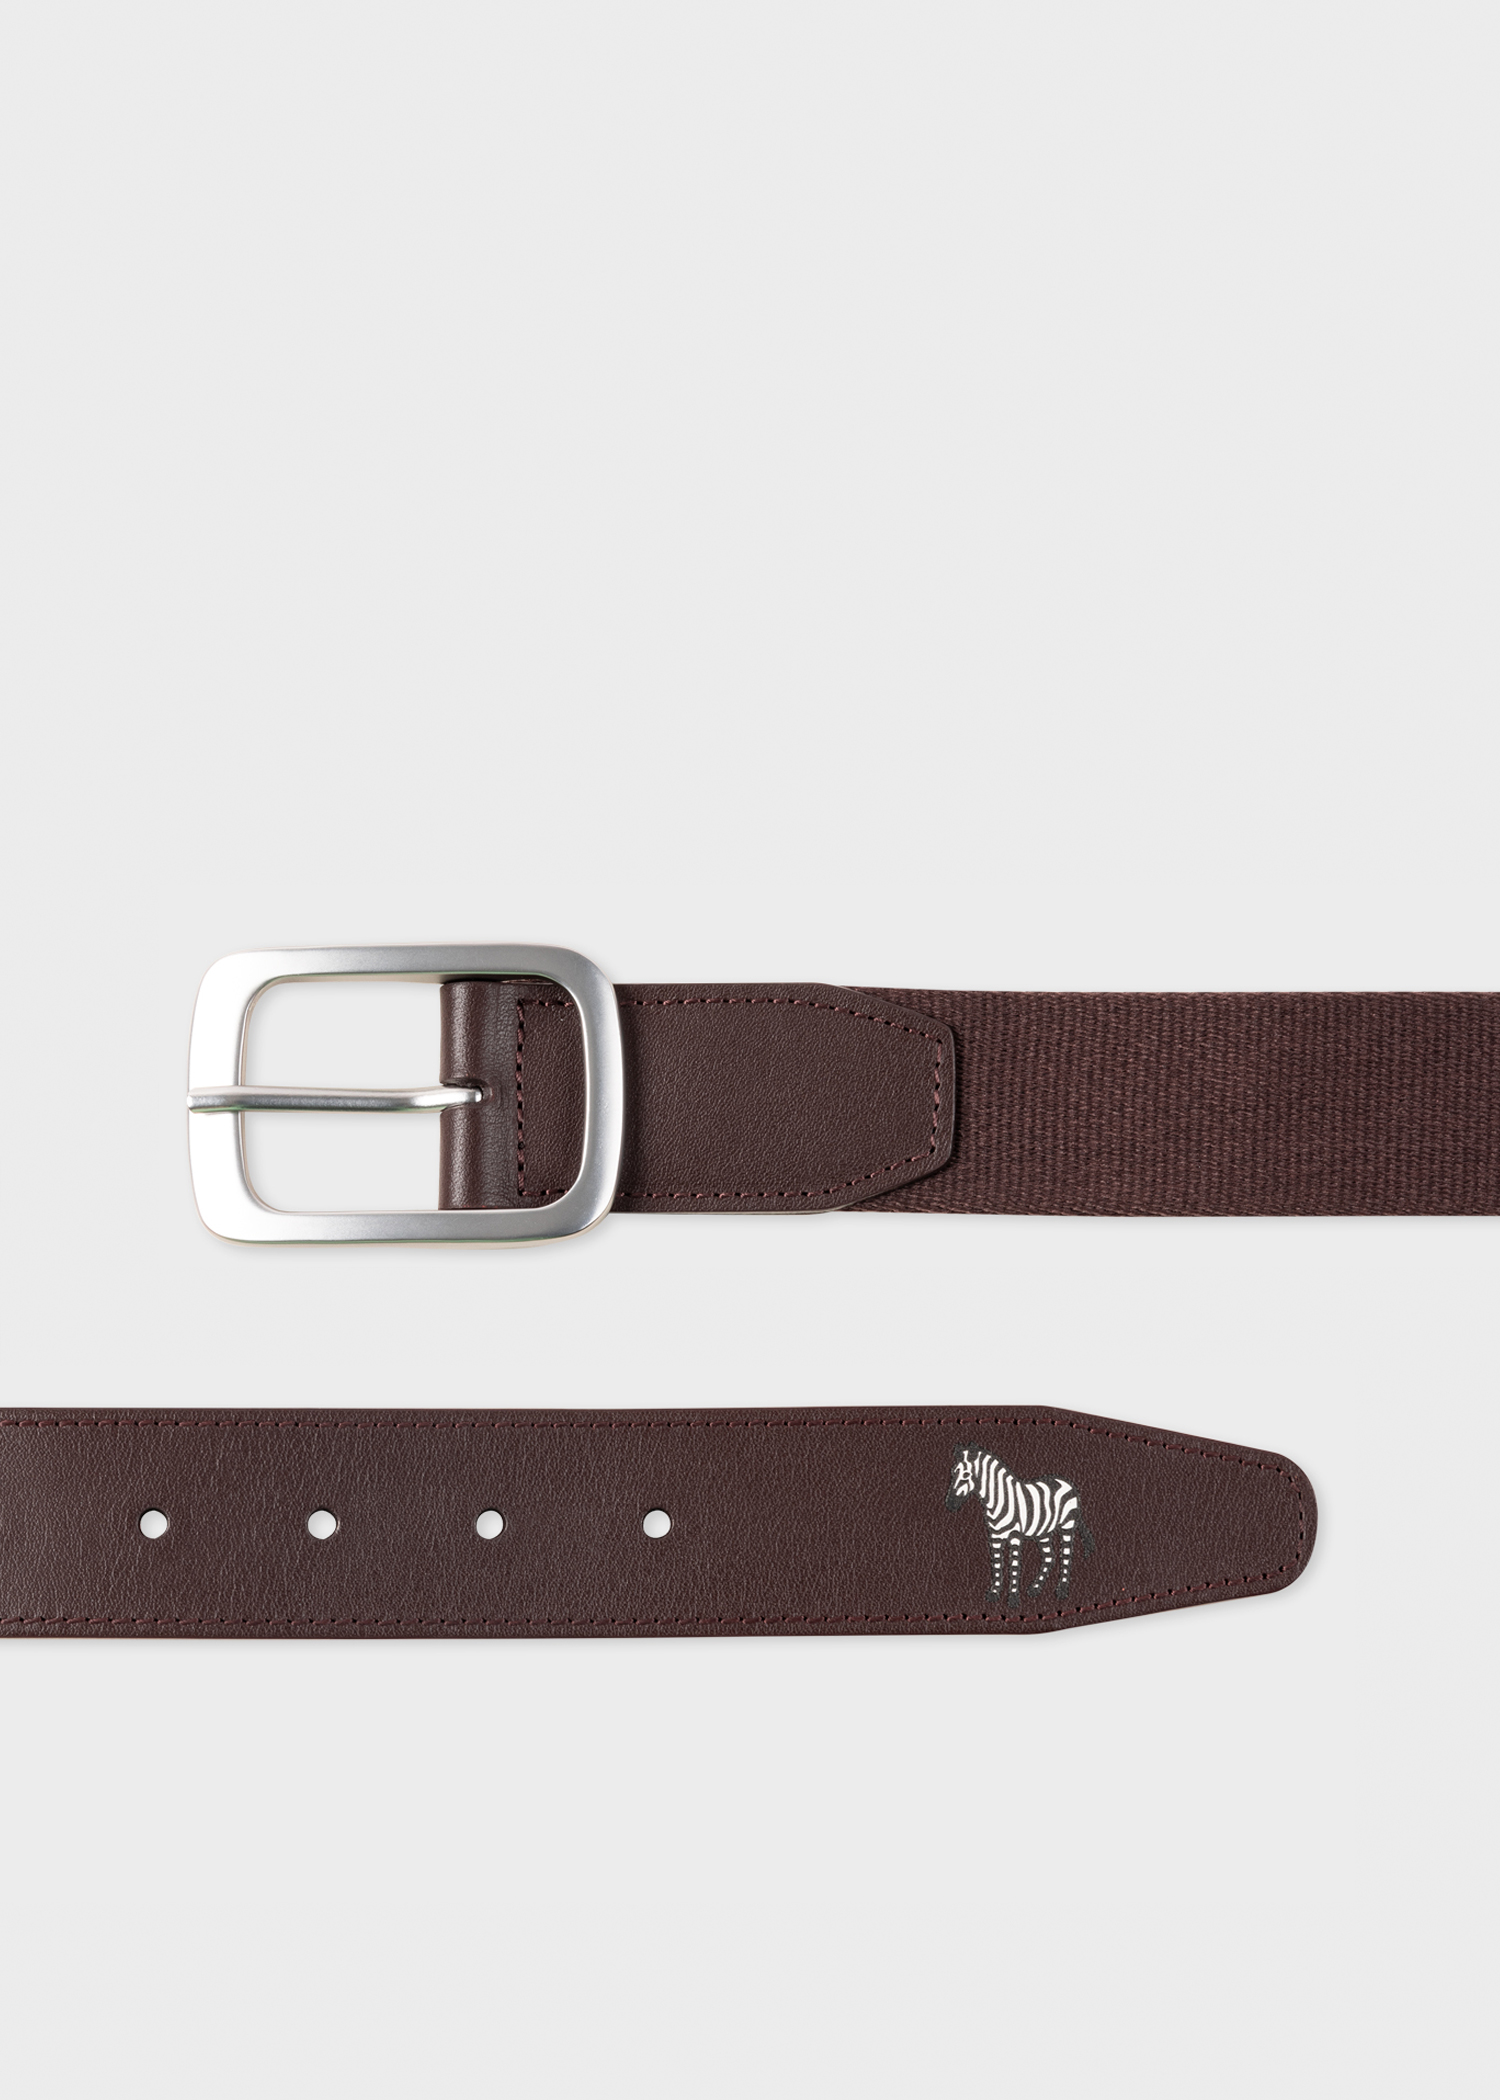 Designer Belts for Men | Paul Smith